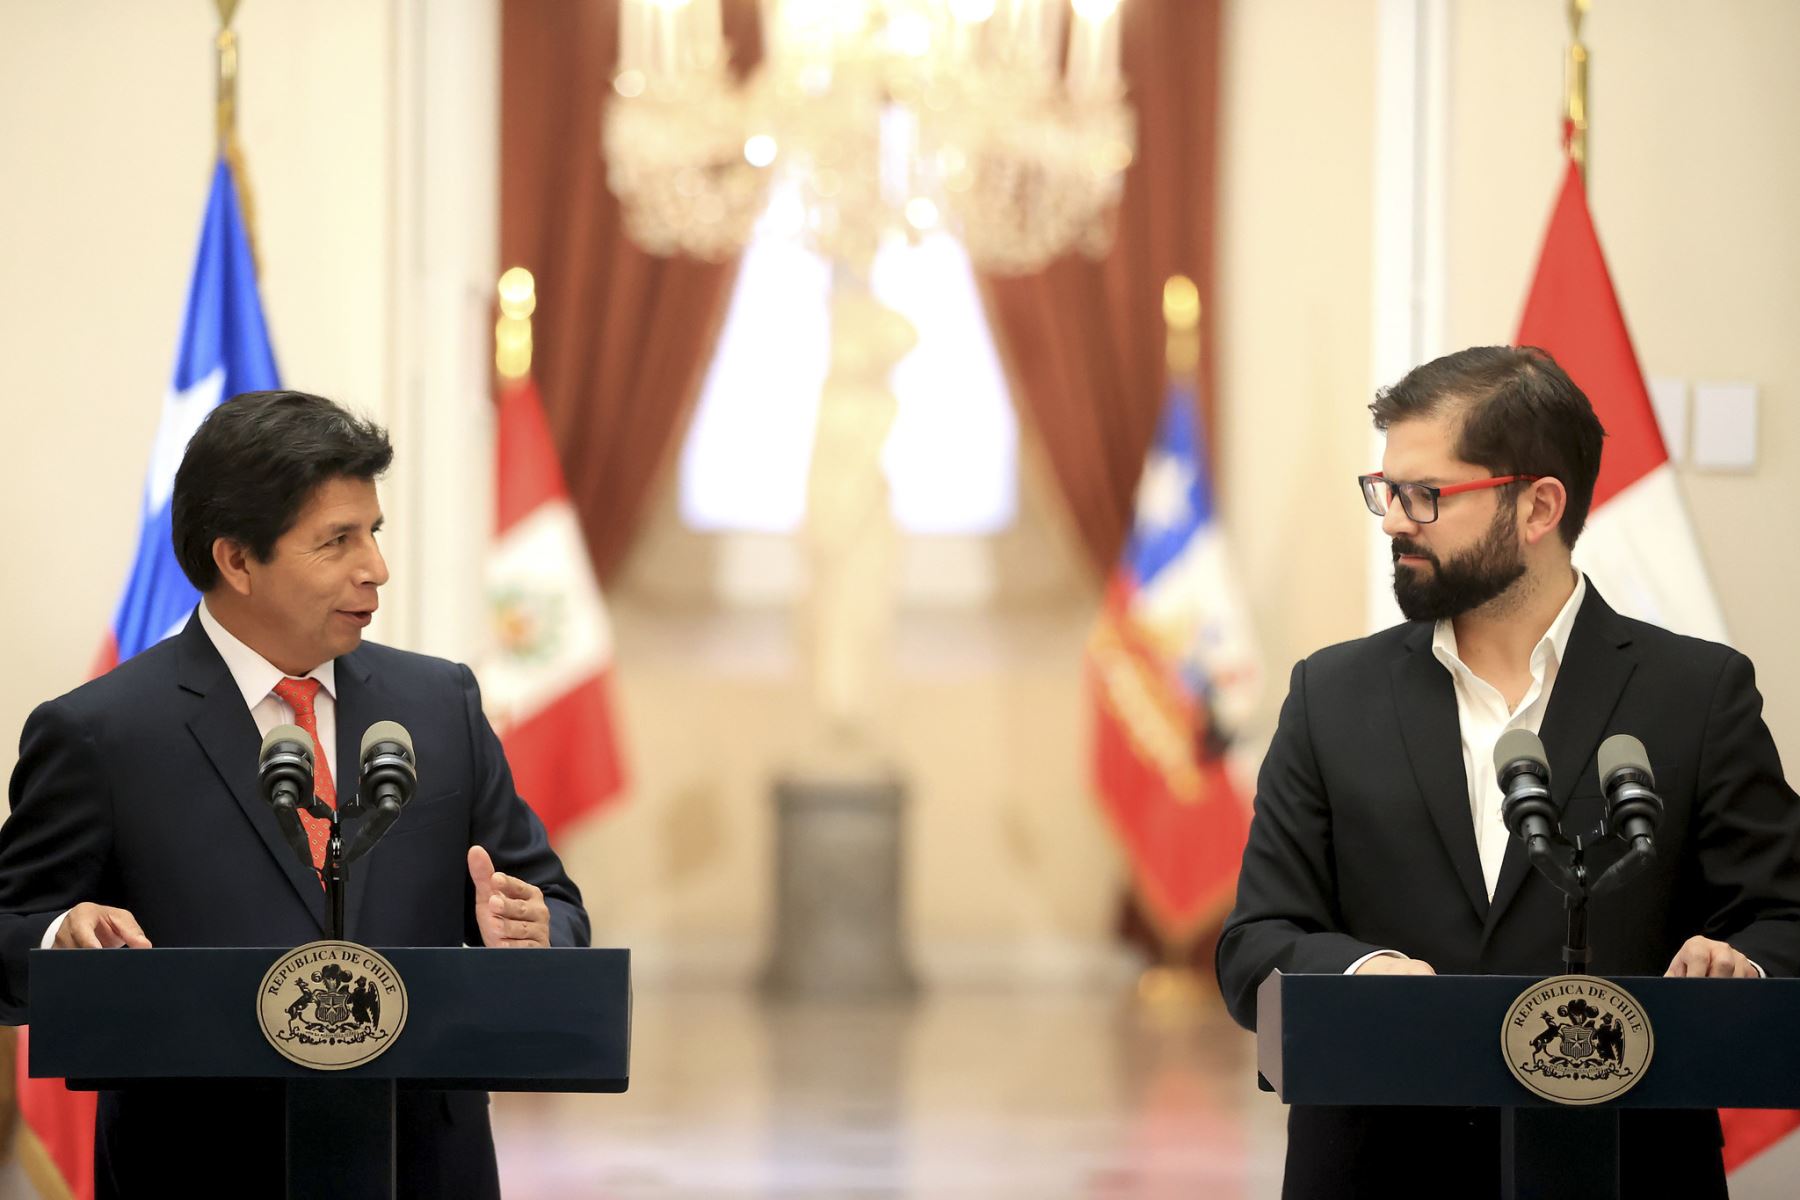 Presidentes Pedro Castillo y Gabriel Boric brindan declaración conjunta y participan fotografía oficial del Encuentro Presidencial y IV Gabinete Binacional Perú-Chile.

Foto:ANDINA/Presidencia